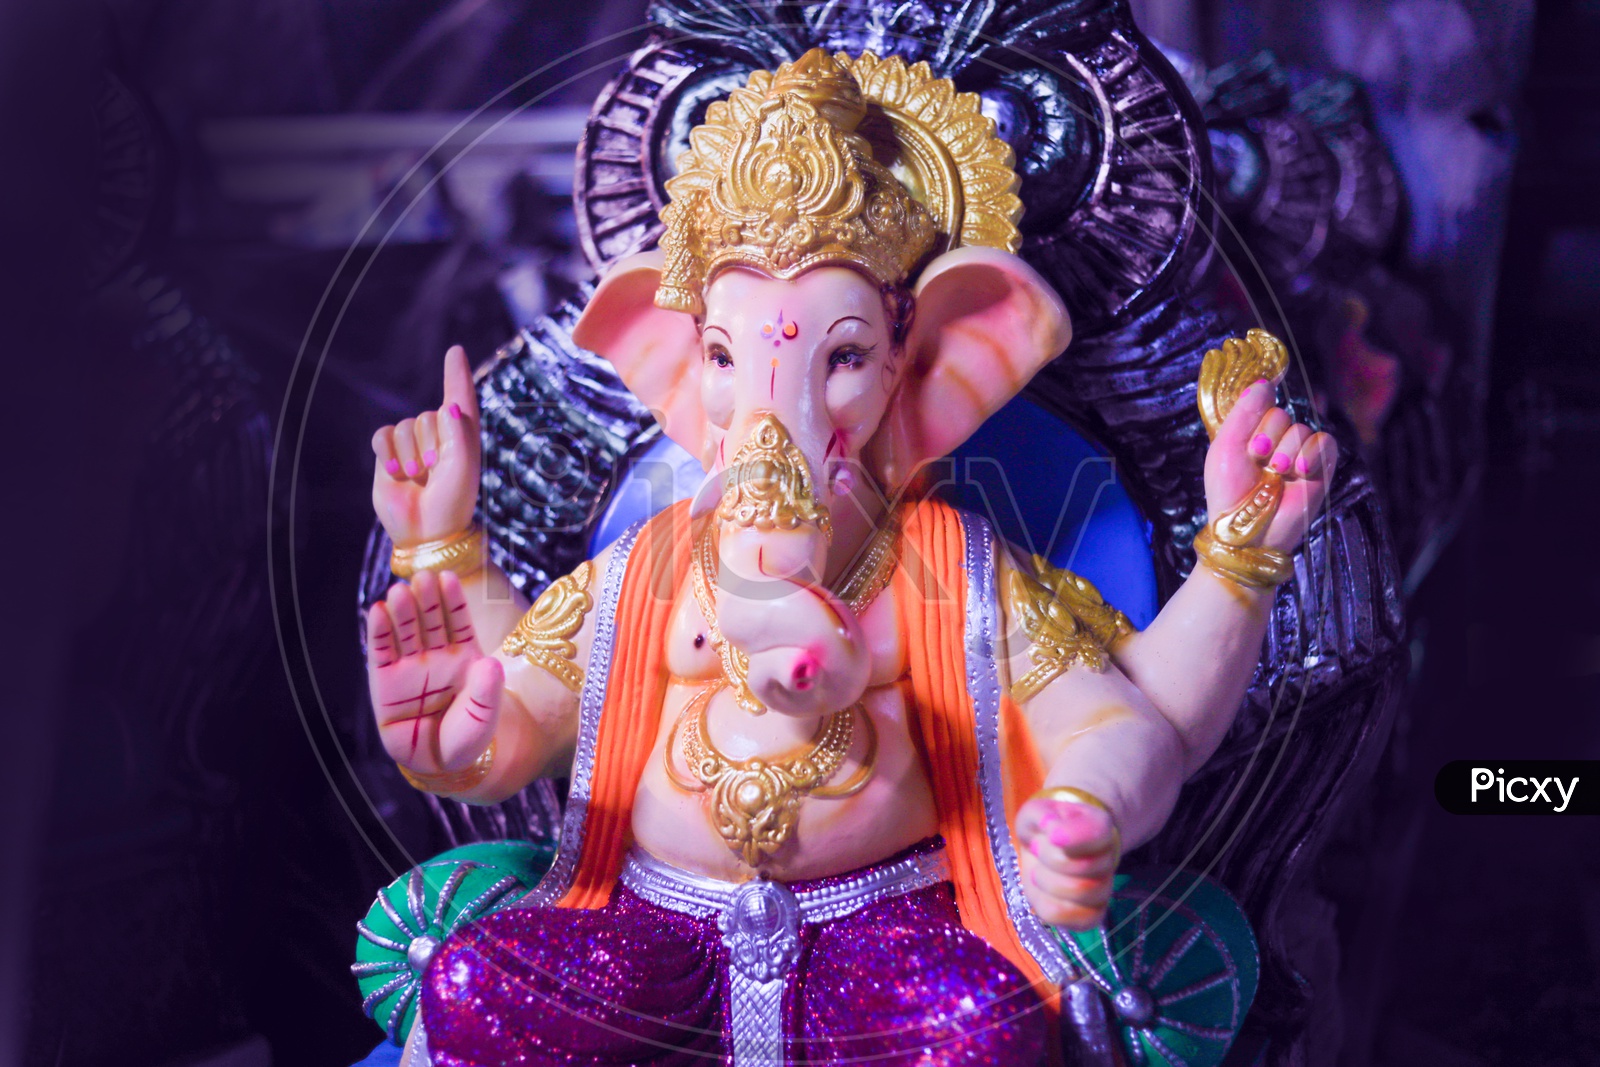 Idol of Lord Ganesha / Ganesh